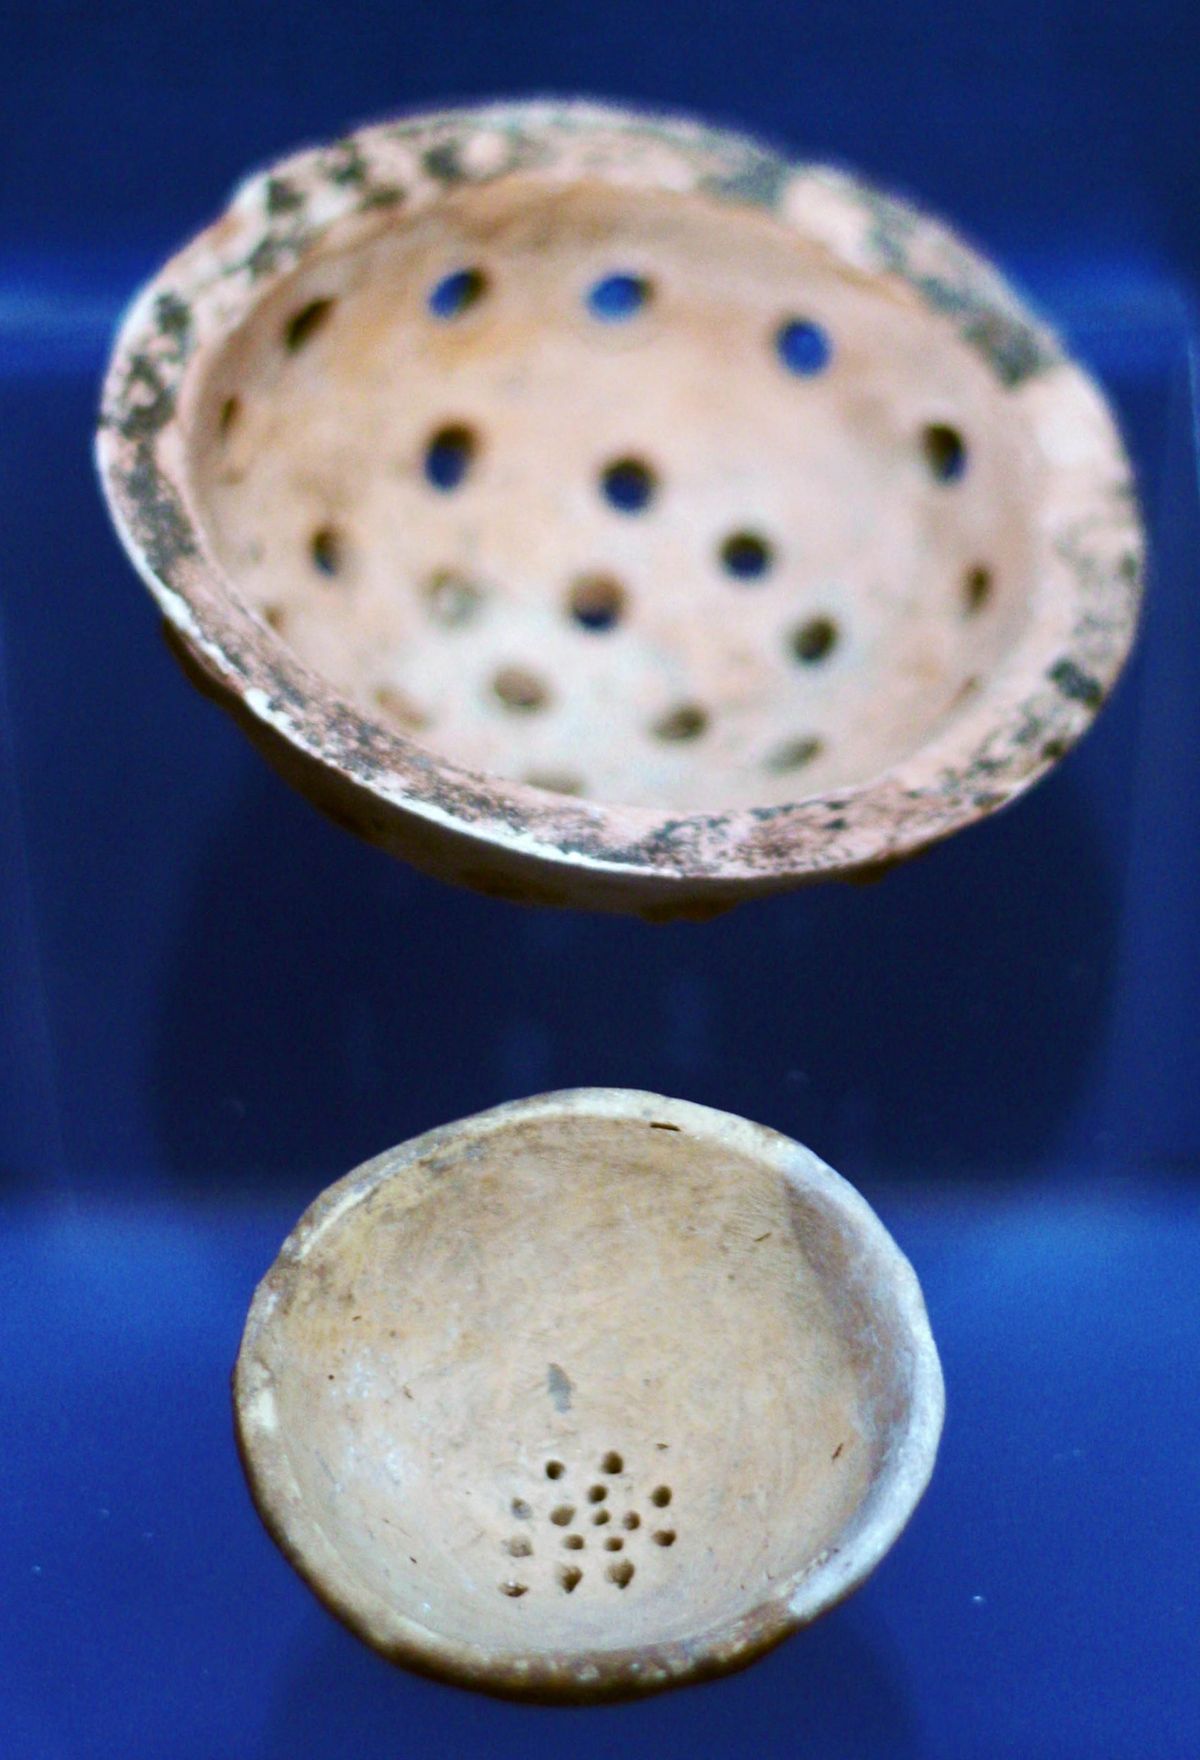 قدیم عراق / الامی میں بیئر کی تیاری میں مٹی کے چھلievesے یا اسٹرینرز استعمال کیے جاتے تھے